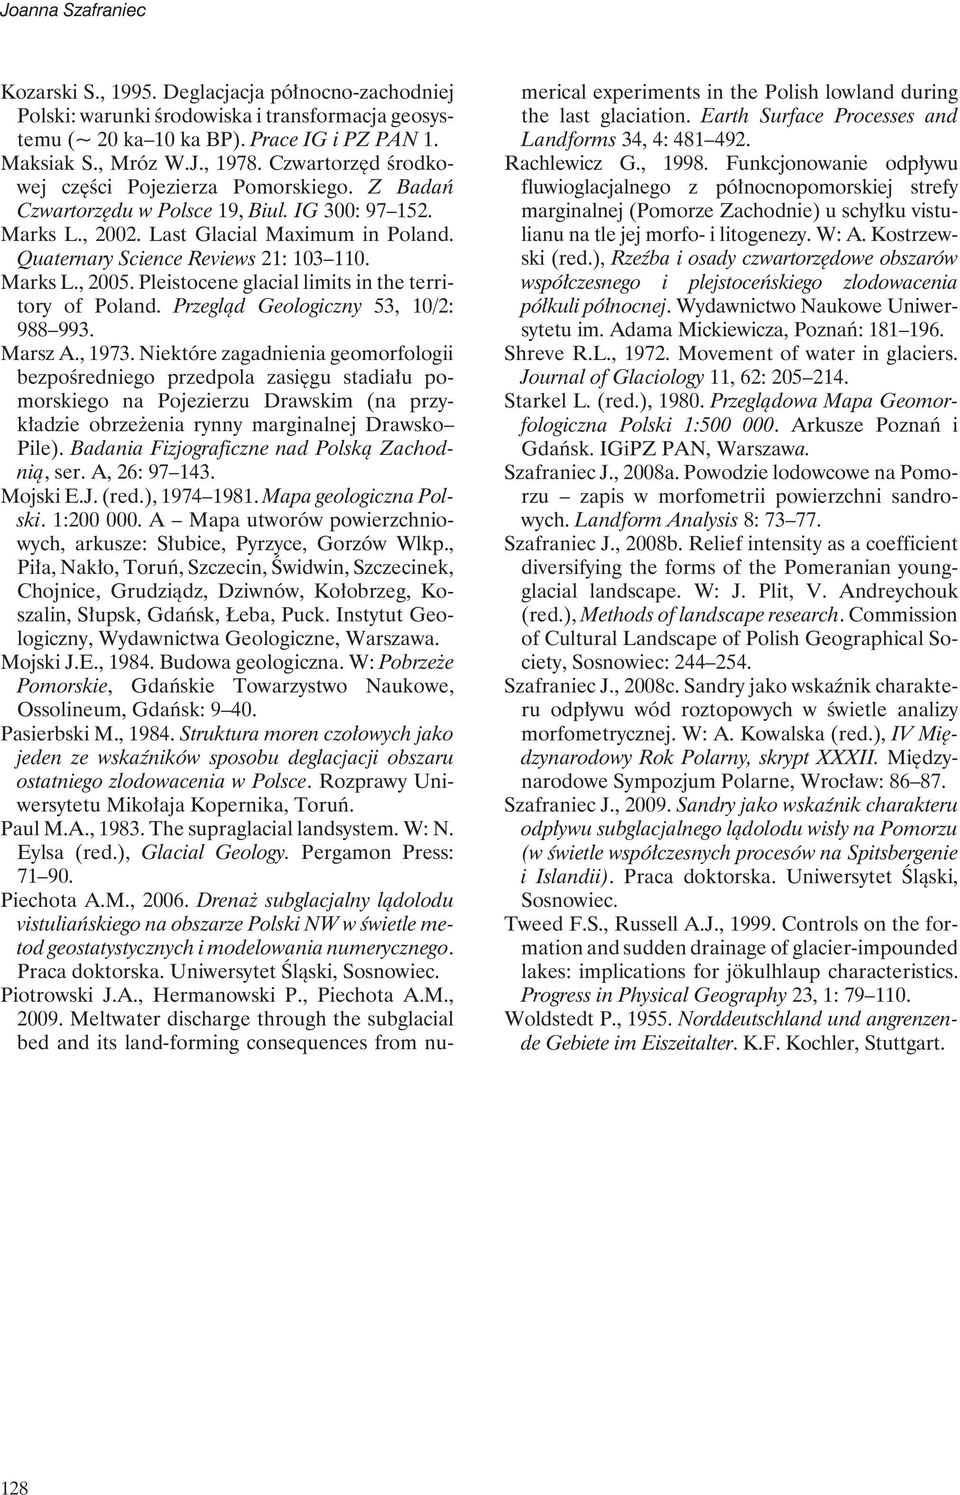 Marks L., 2005. Pleistocene glacial limits in the territory of Poland. Przegląd Geologiczny 53, 10/2: 988 993. Marsz A., 1973.